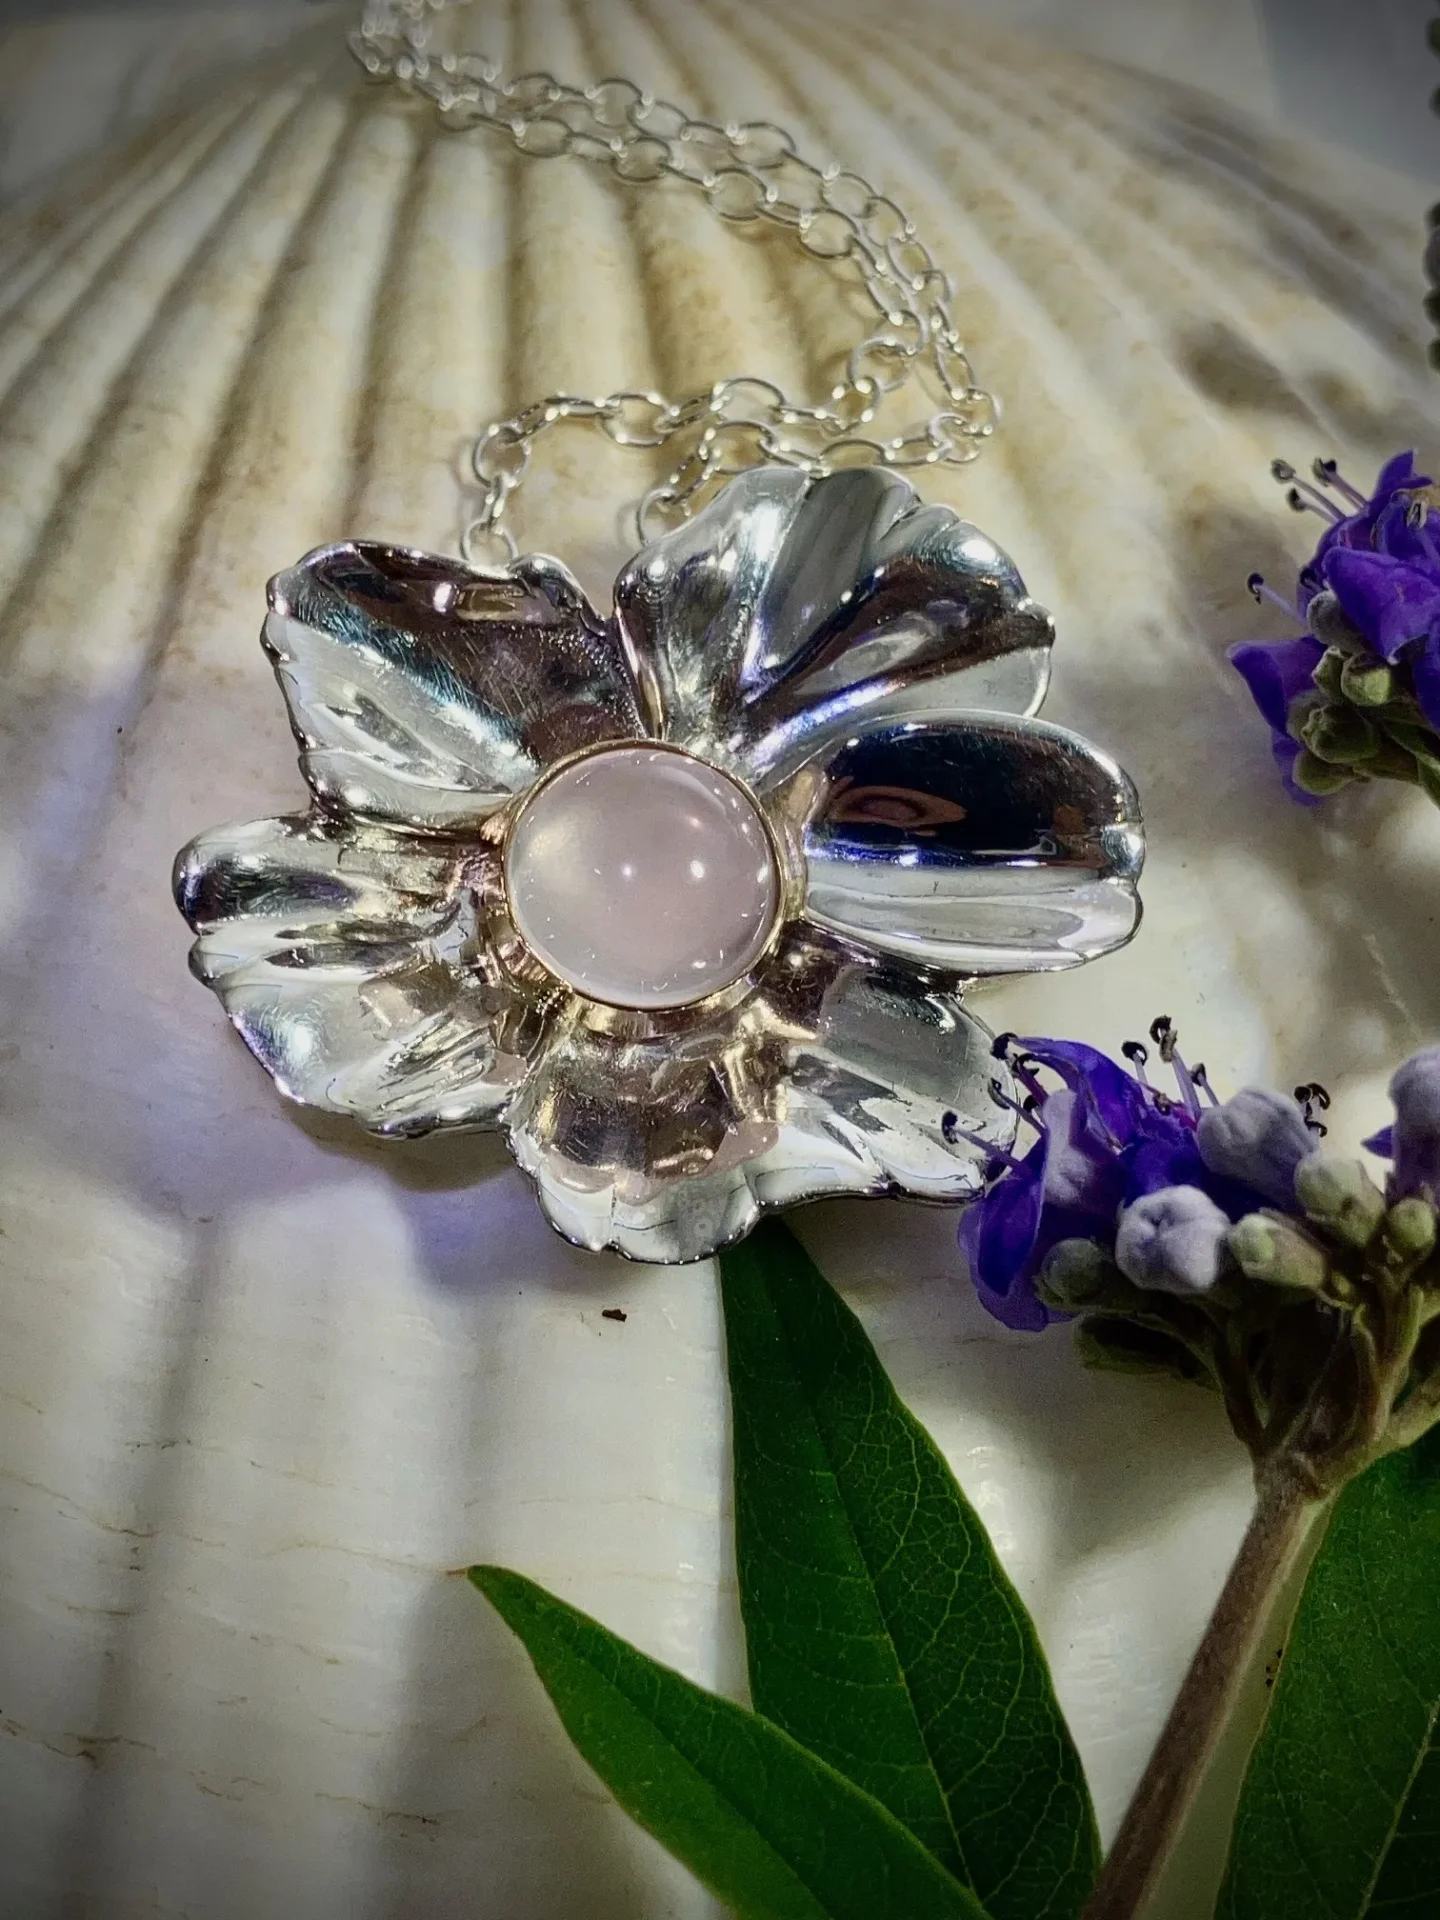 A silver flower with a rose quartz center.